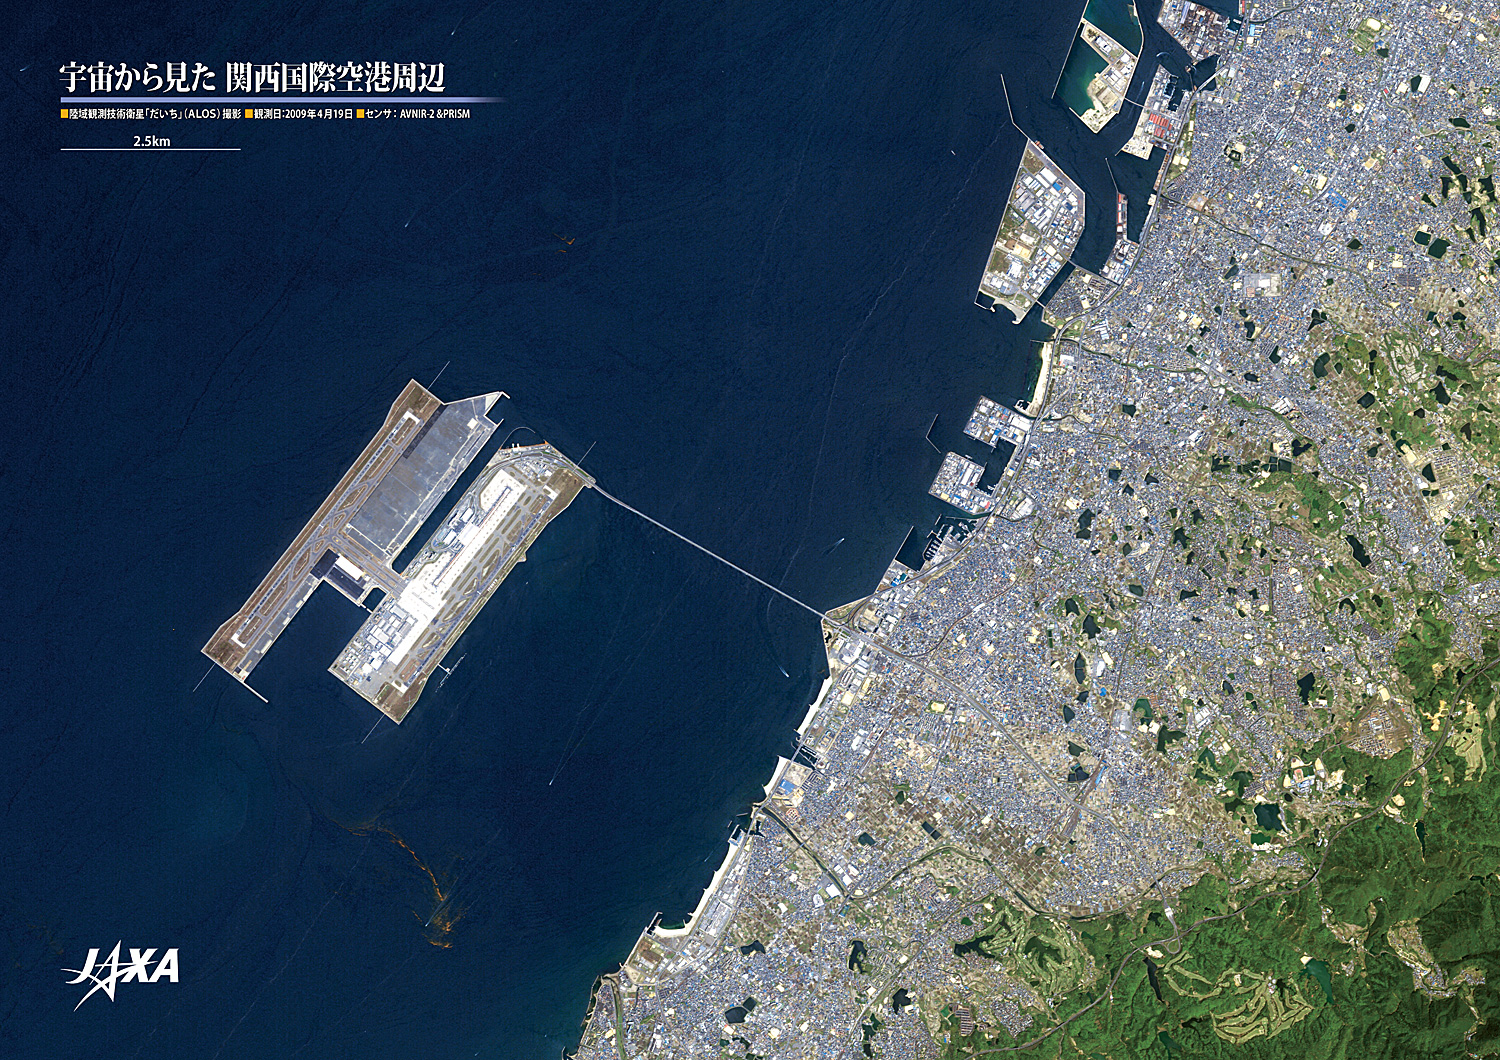 だいちから見た日本の都市 関西国際空港周辺:衛星画像（ポスター仕上げ）